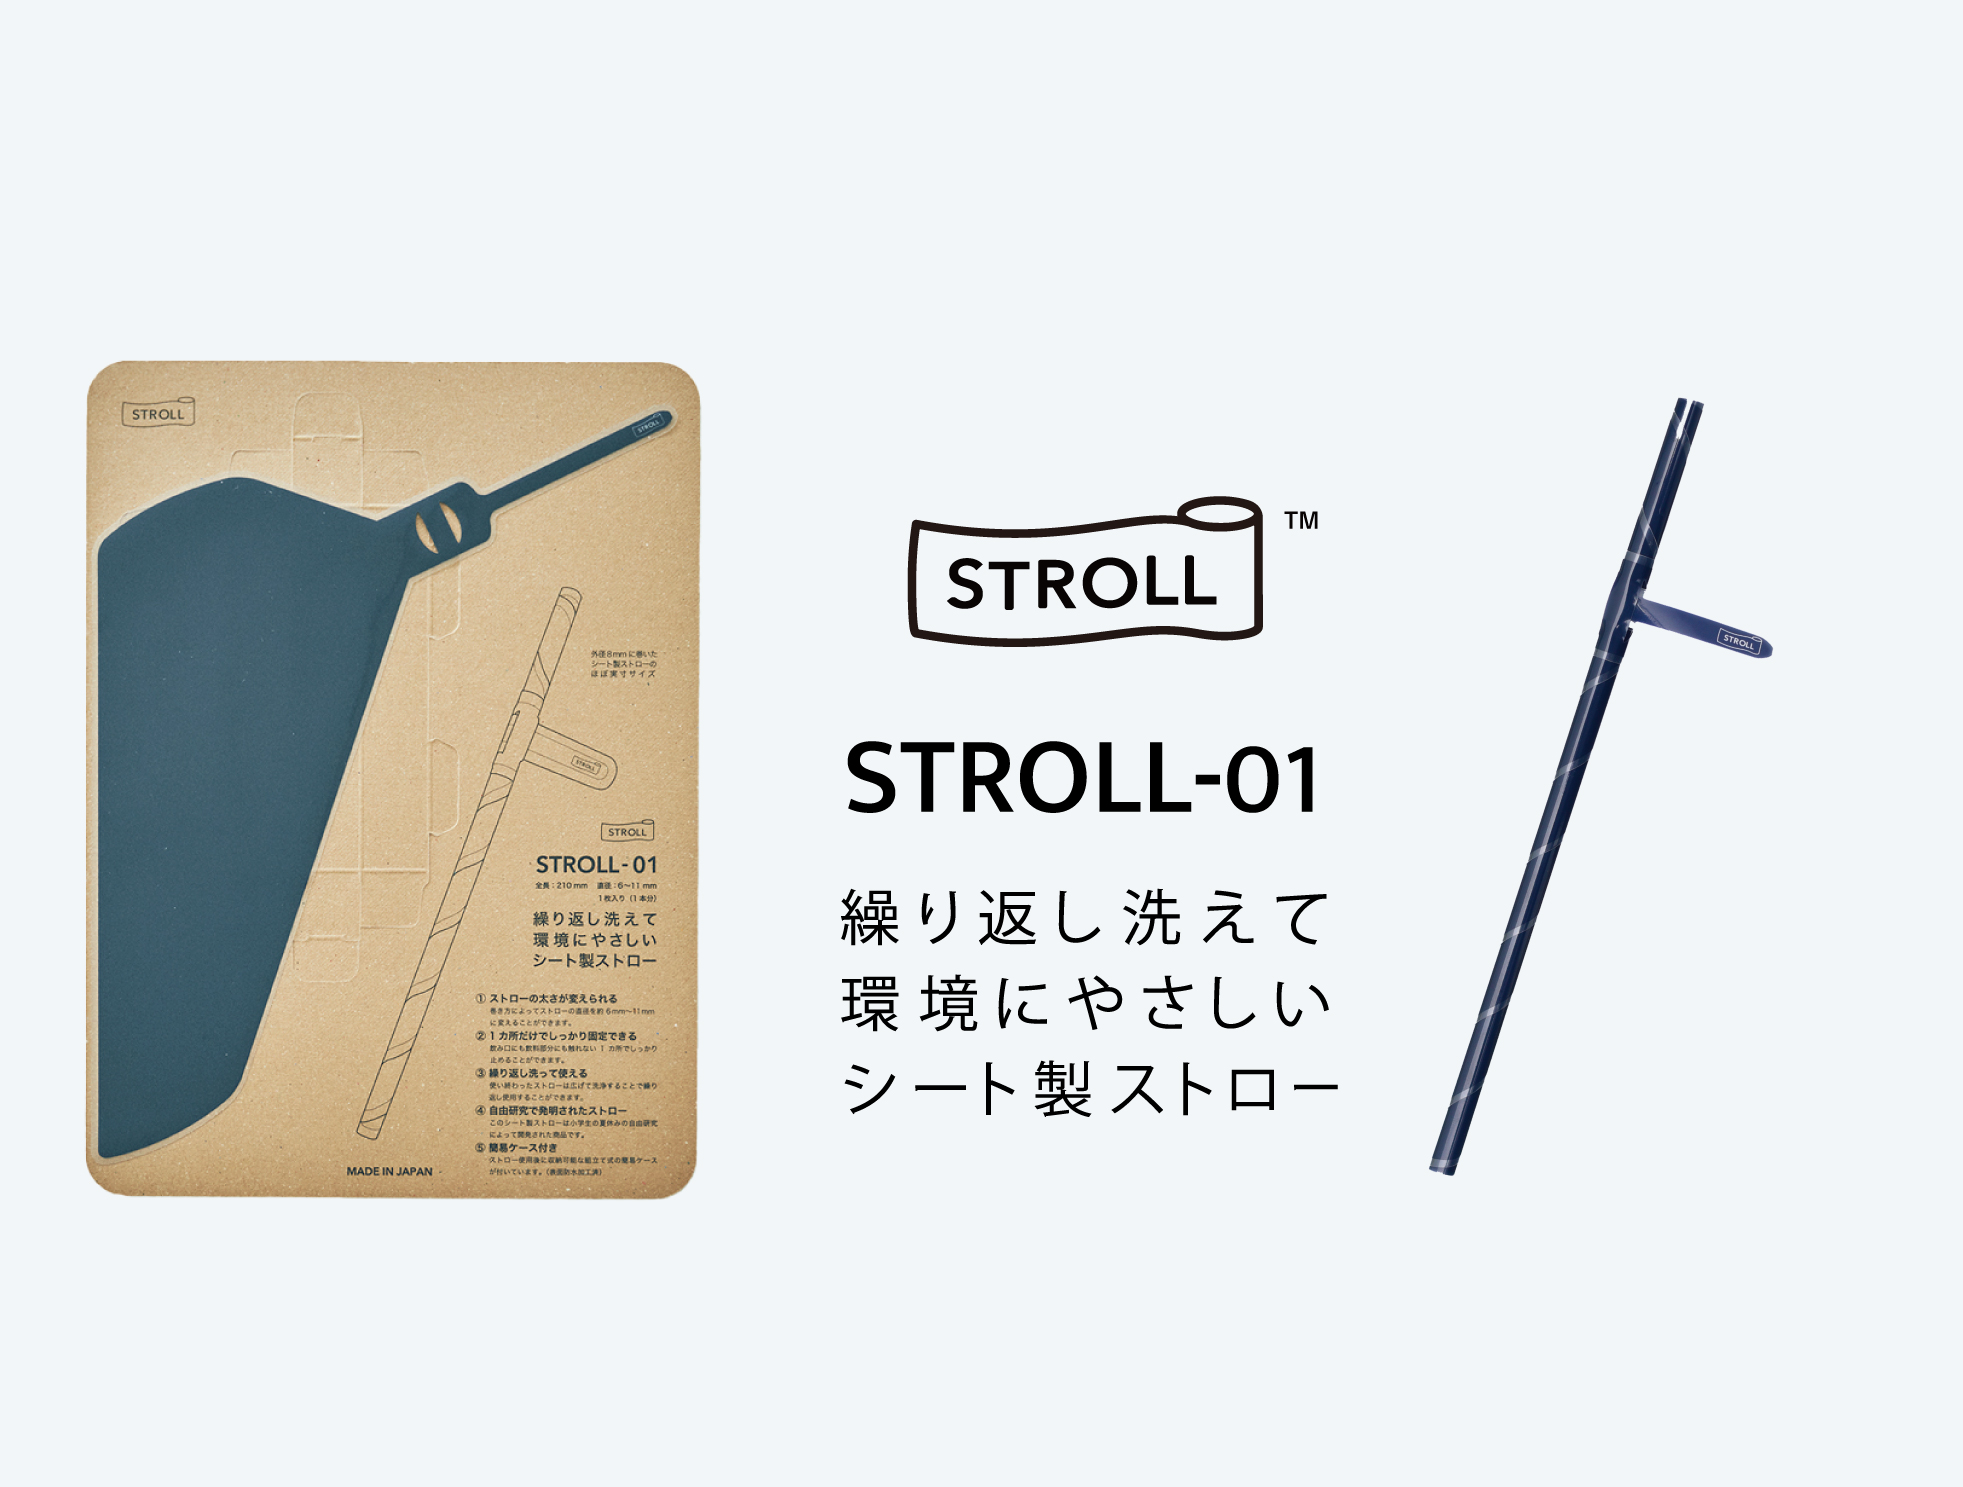 シート製ストロー「STROLL_01」概要図